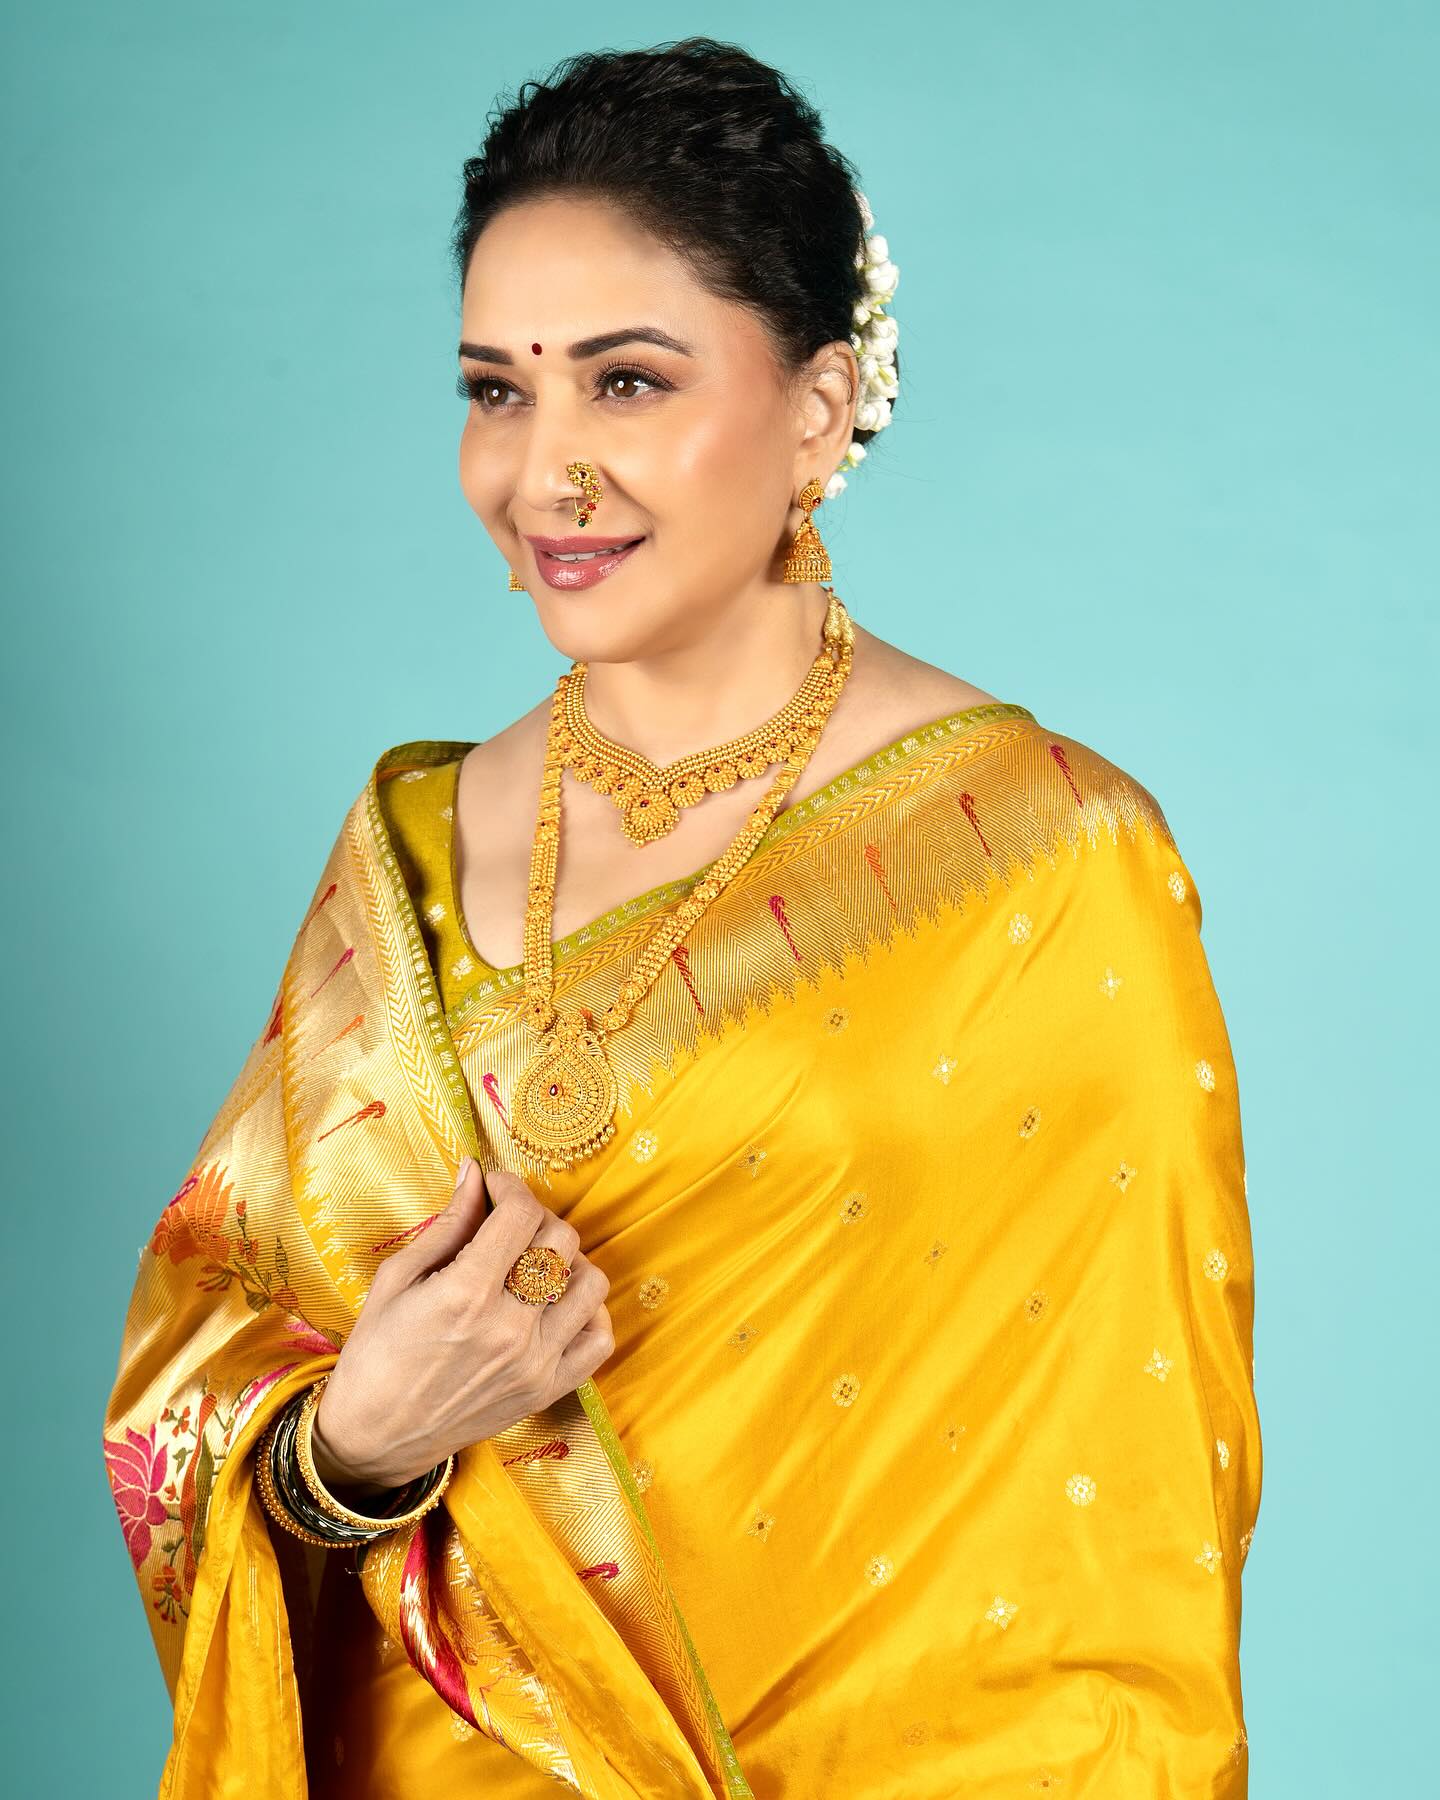 Madhuri Dixit in Sacred Weaves' Paithani Banarasi Saree